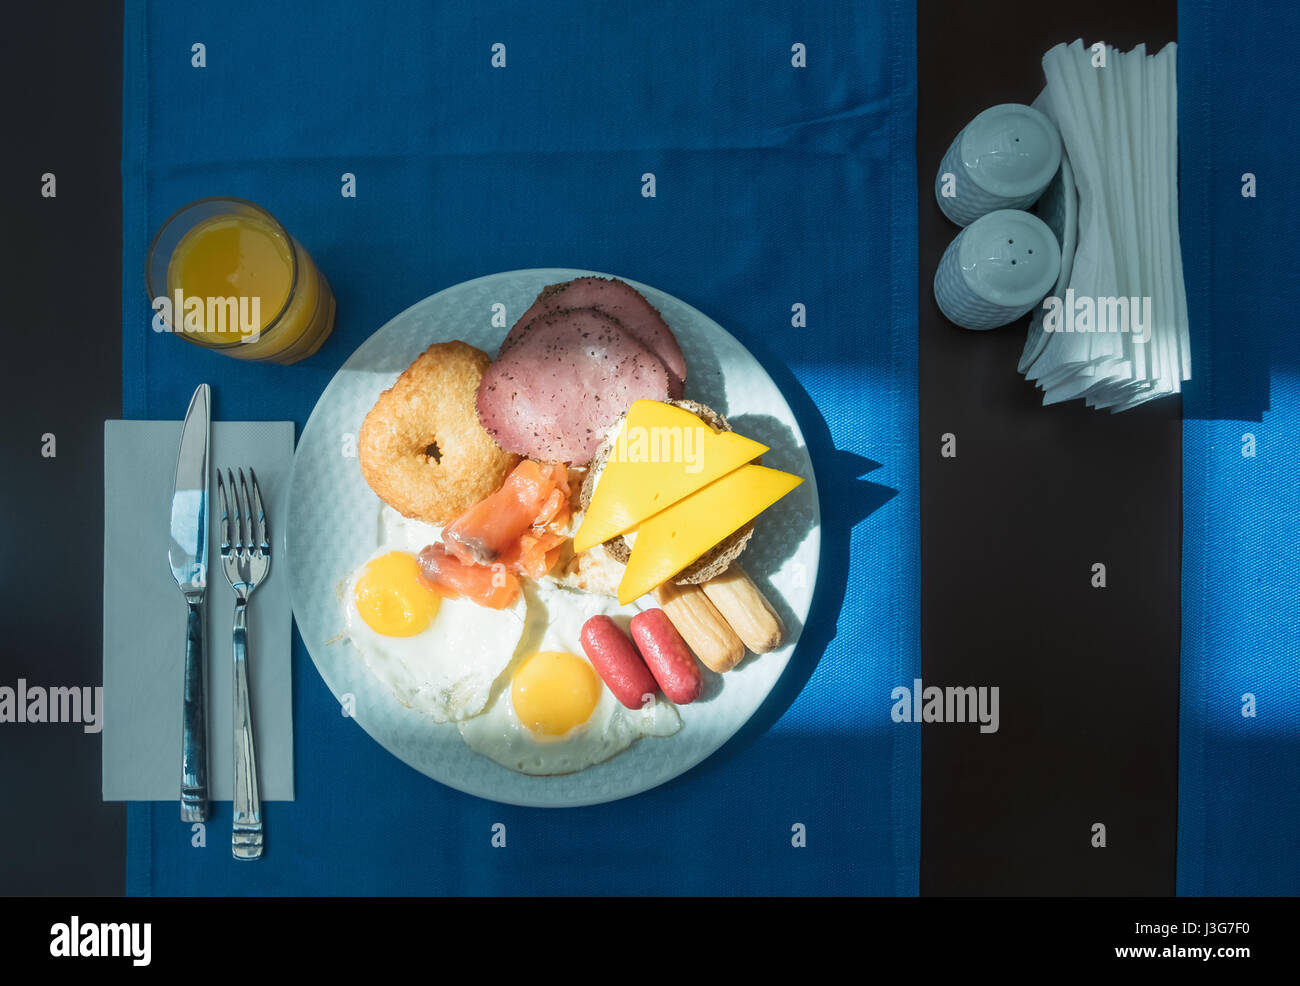 Leckeres Frühstück mit gebratenen Eiern, Wurst, Sandwichs und Orangensaft Stockfoto